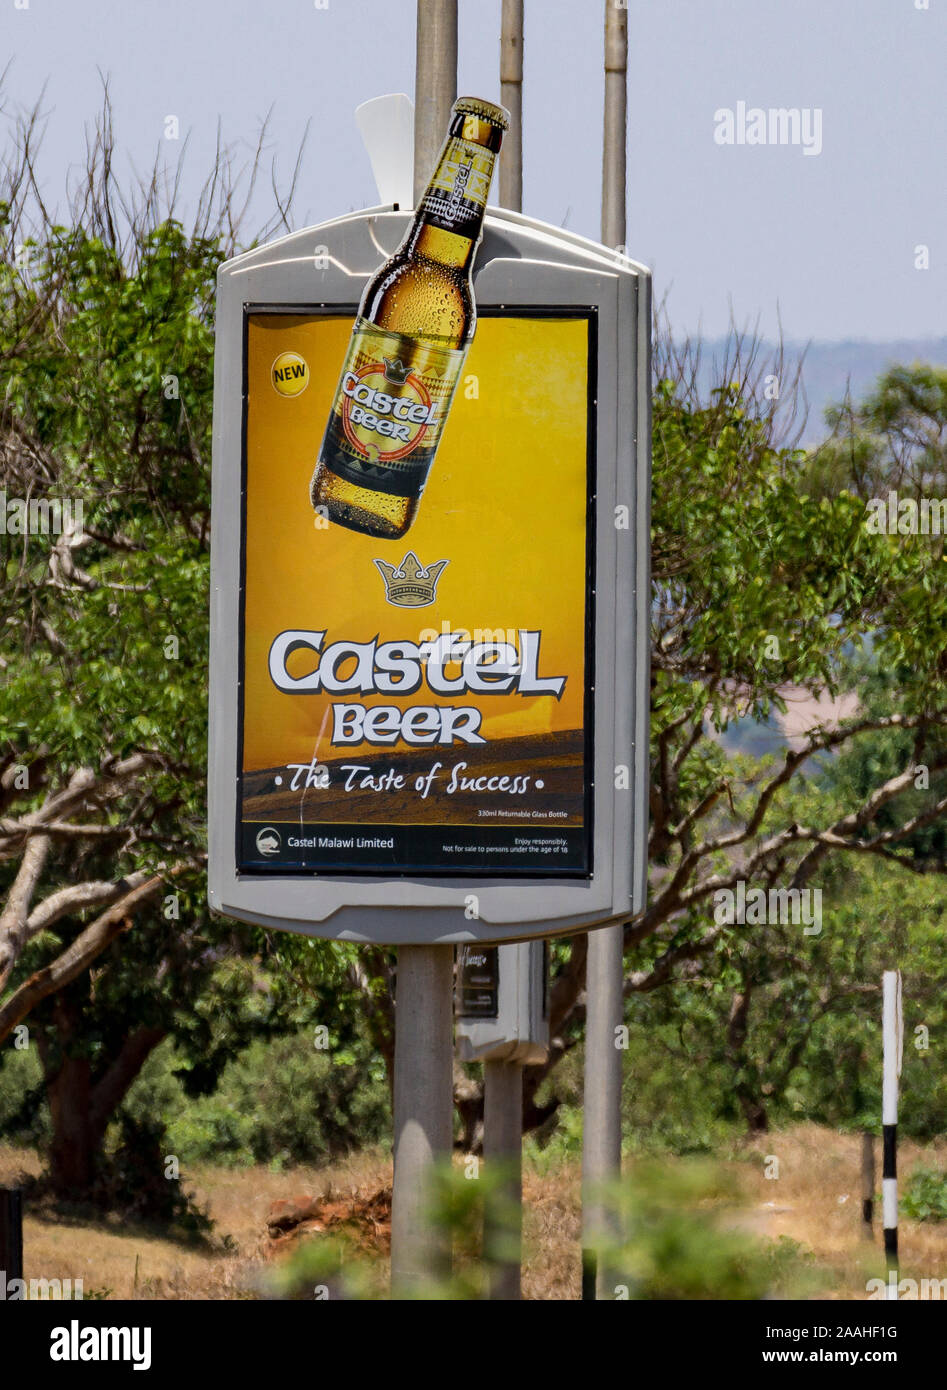 Werbung Board für Castel Bier, Malawi. "Der Geschmack des Erfolges" Stockfoto